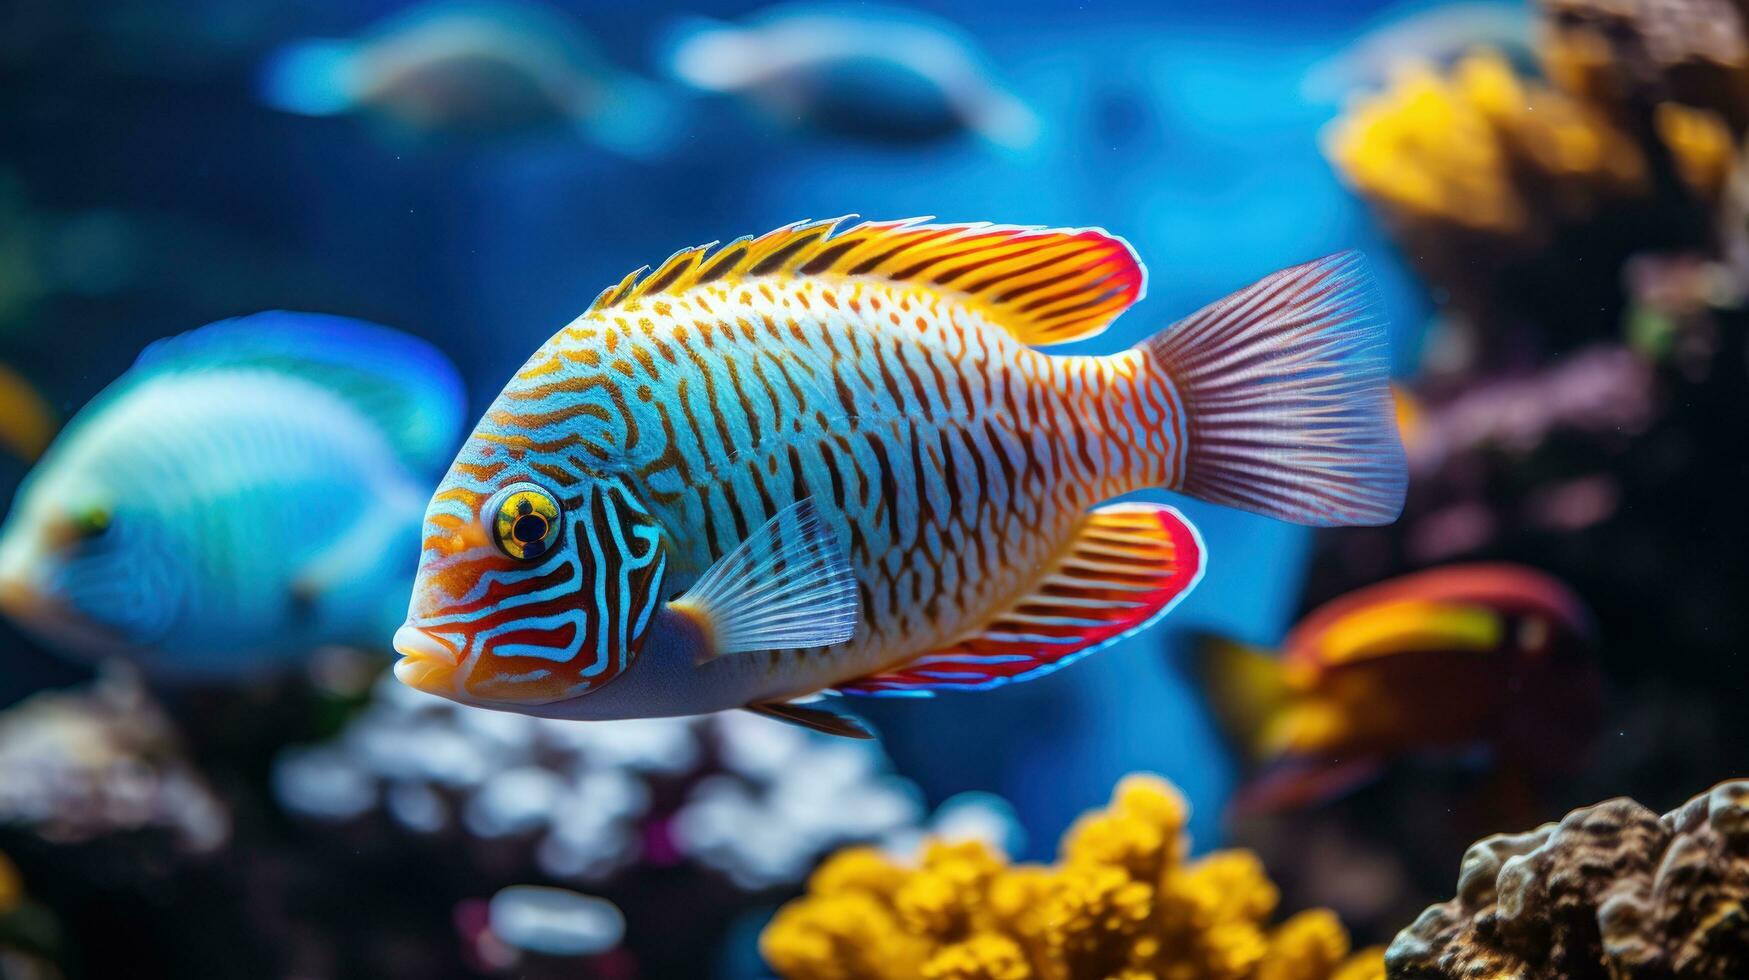 Friendly fish swimming in vibrant aquarium photo